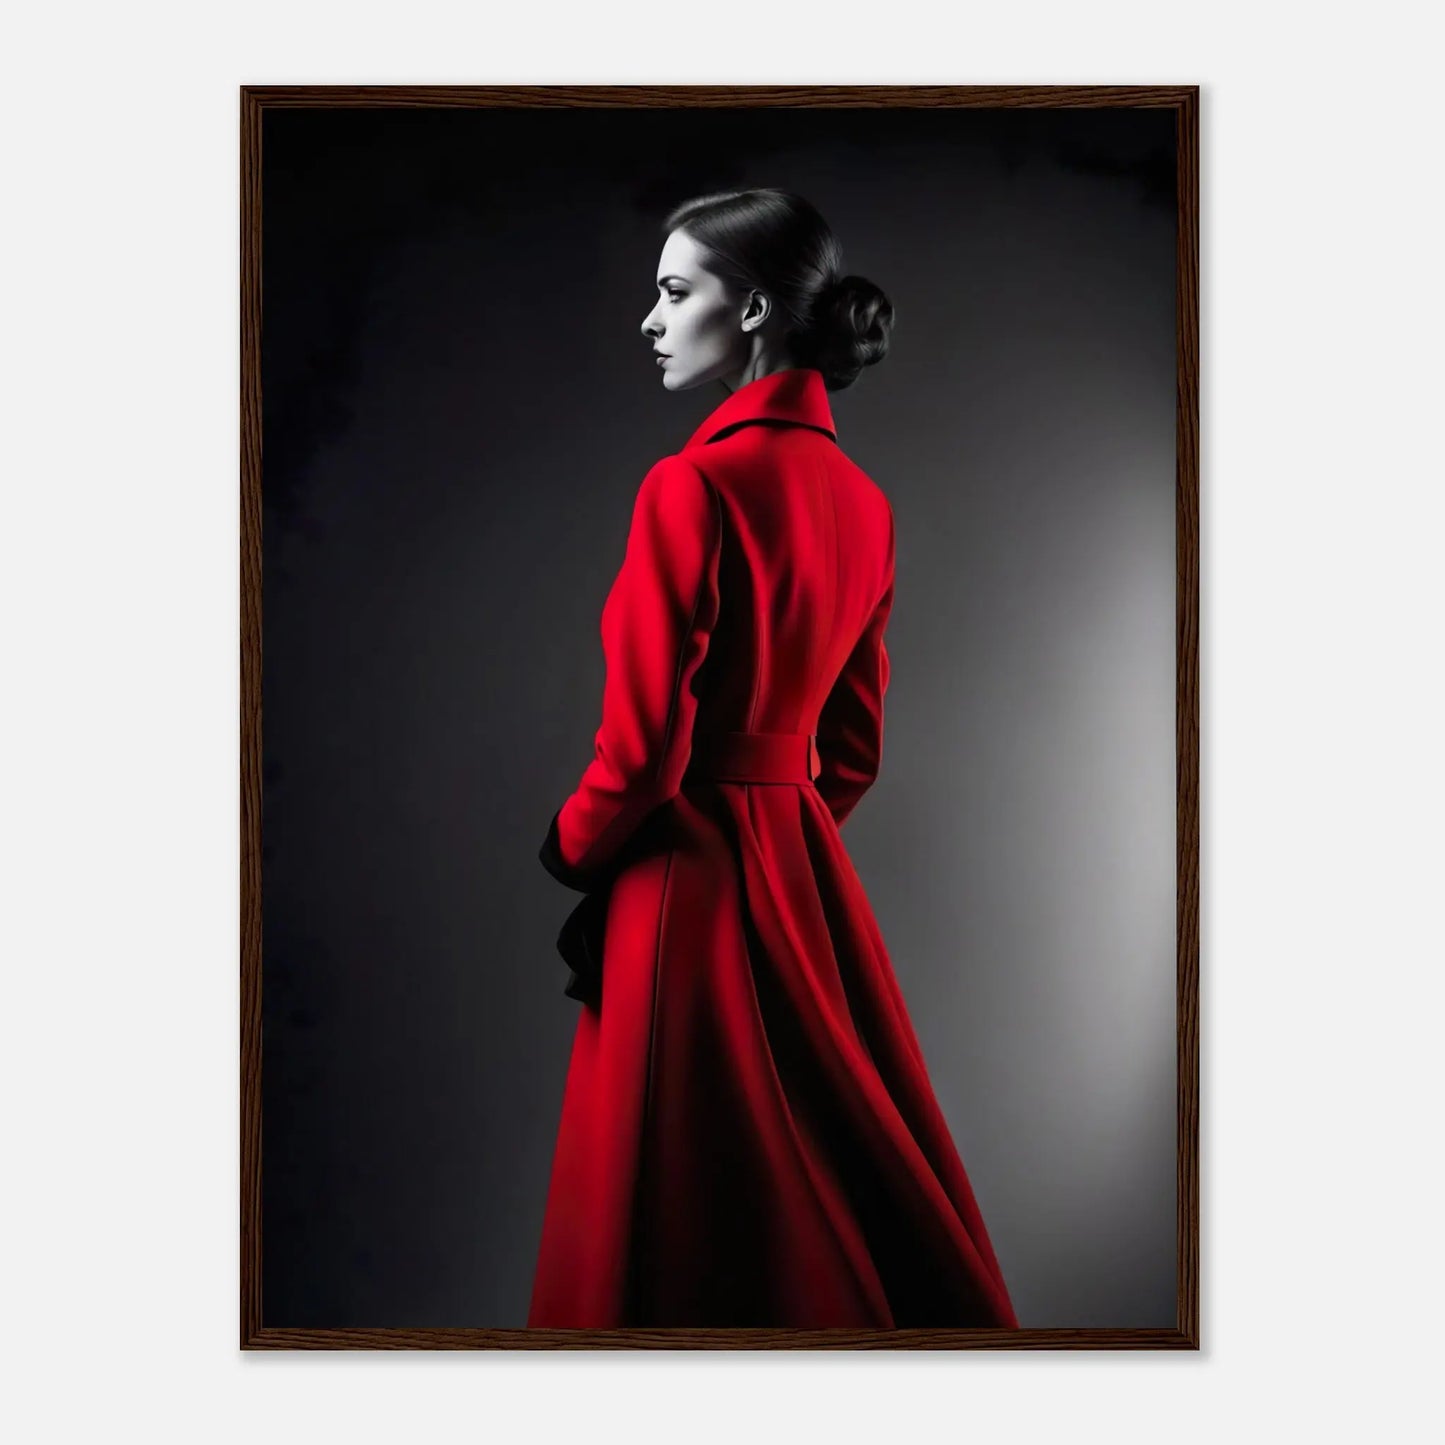 Gerahmtes Premium-Poster - Frau im roten Mantel - Schwarz-Weiß, KI-Kunst - RolConArt, Schwarz-Weiß mit Akzentfarben, 60x80-cm-24x32-Dunkler-Holzrahmen